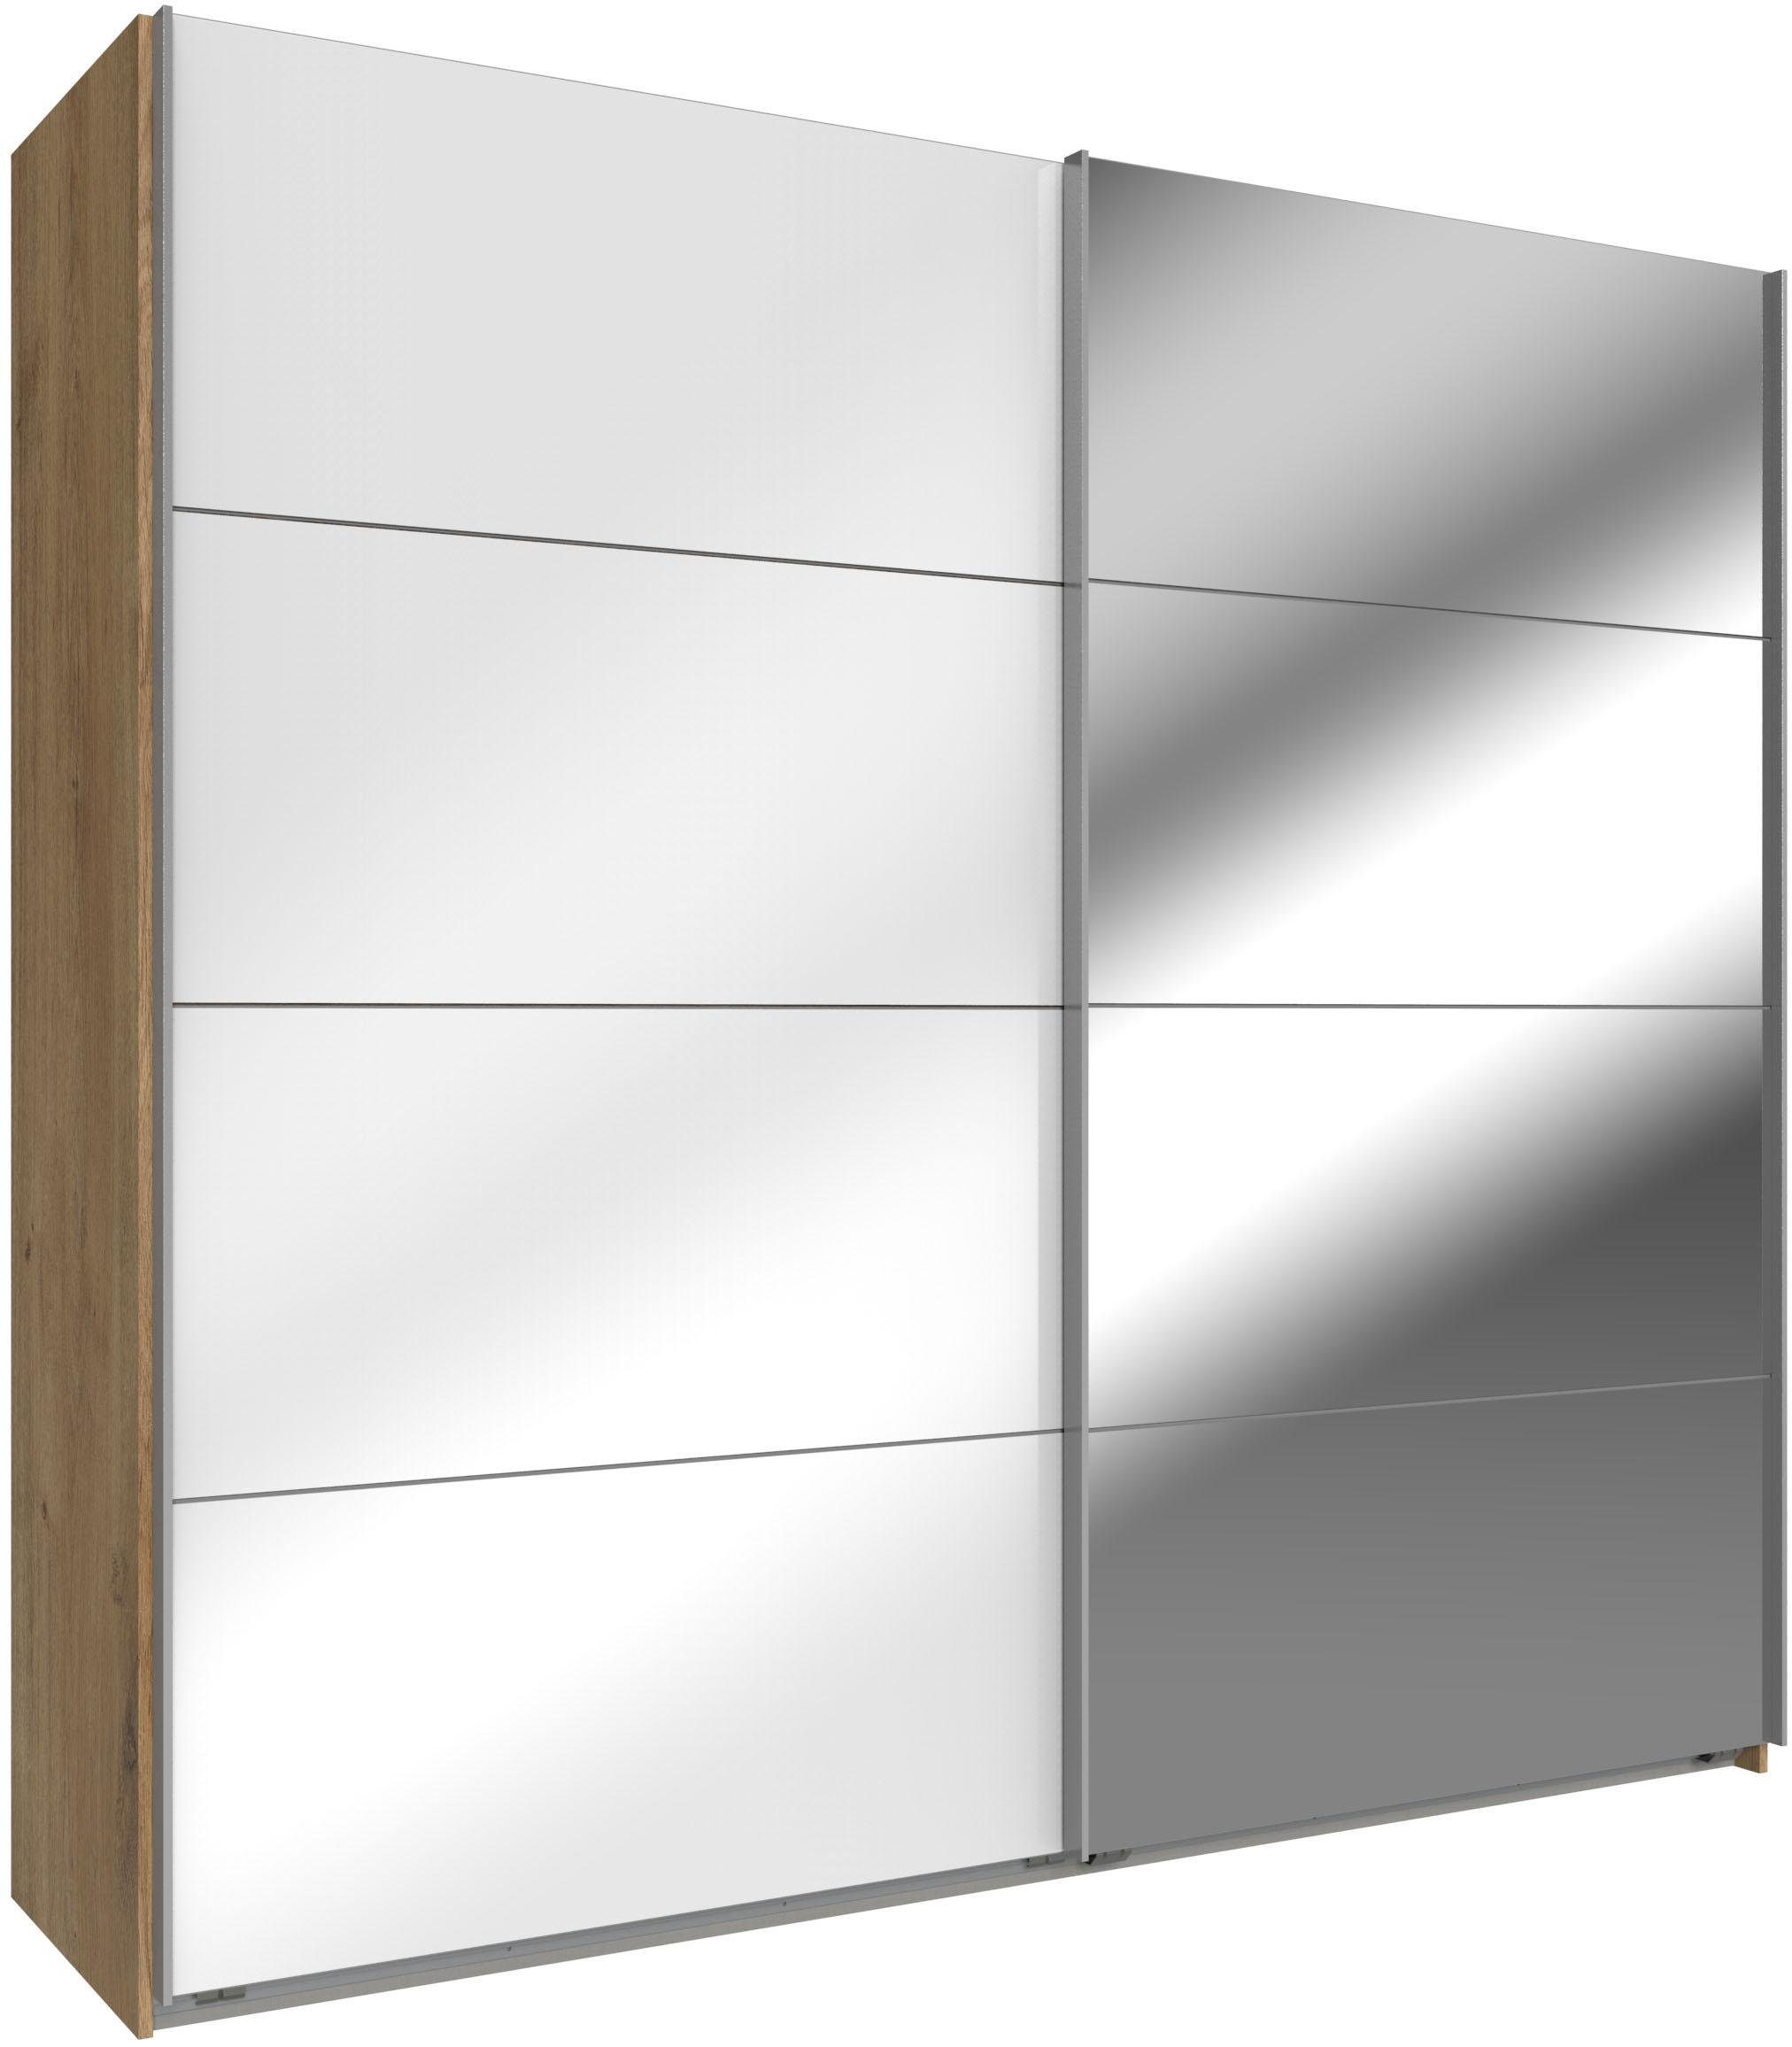 Wimex Schwebetürenschrank Easy mit Glas und Spiegel plankeneichefarben, Weißglas/Spiegel | Schwebetürenschränke